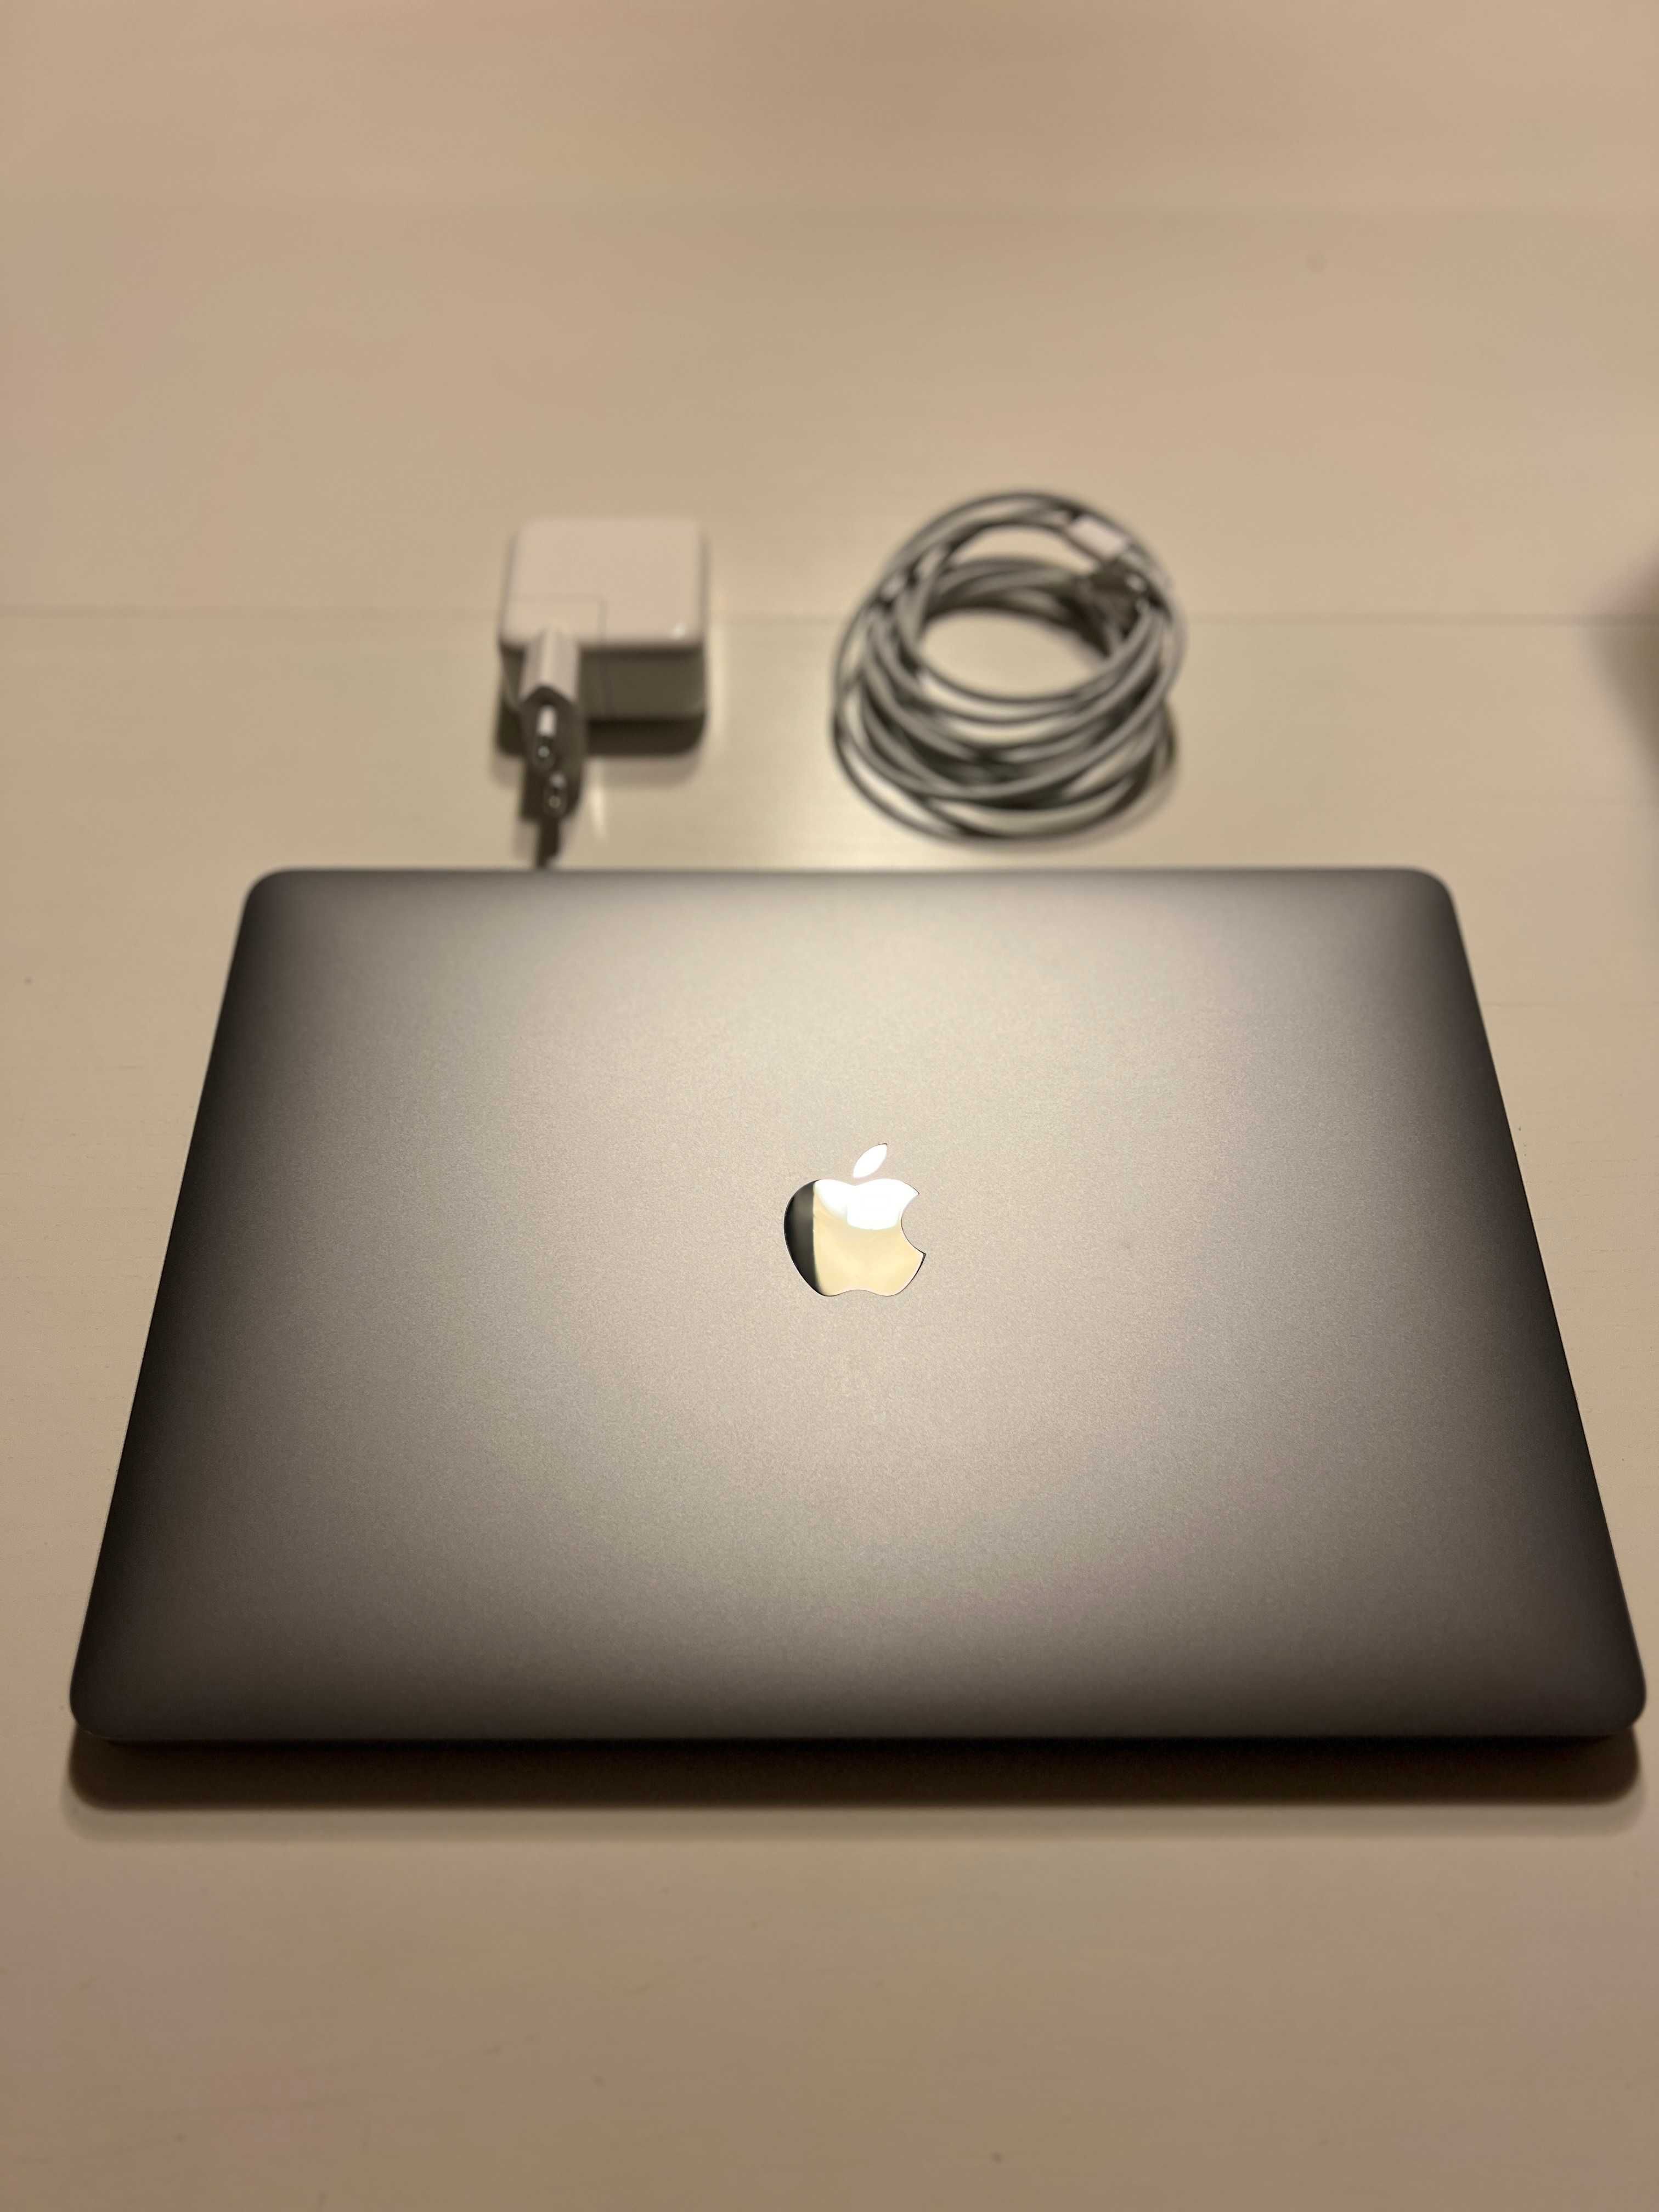 Apple MacBook Air M1/16GB/256/Mac OS Space Gray, używany 6 miesięcy